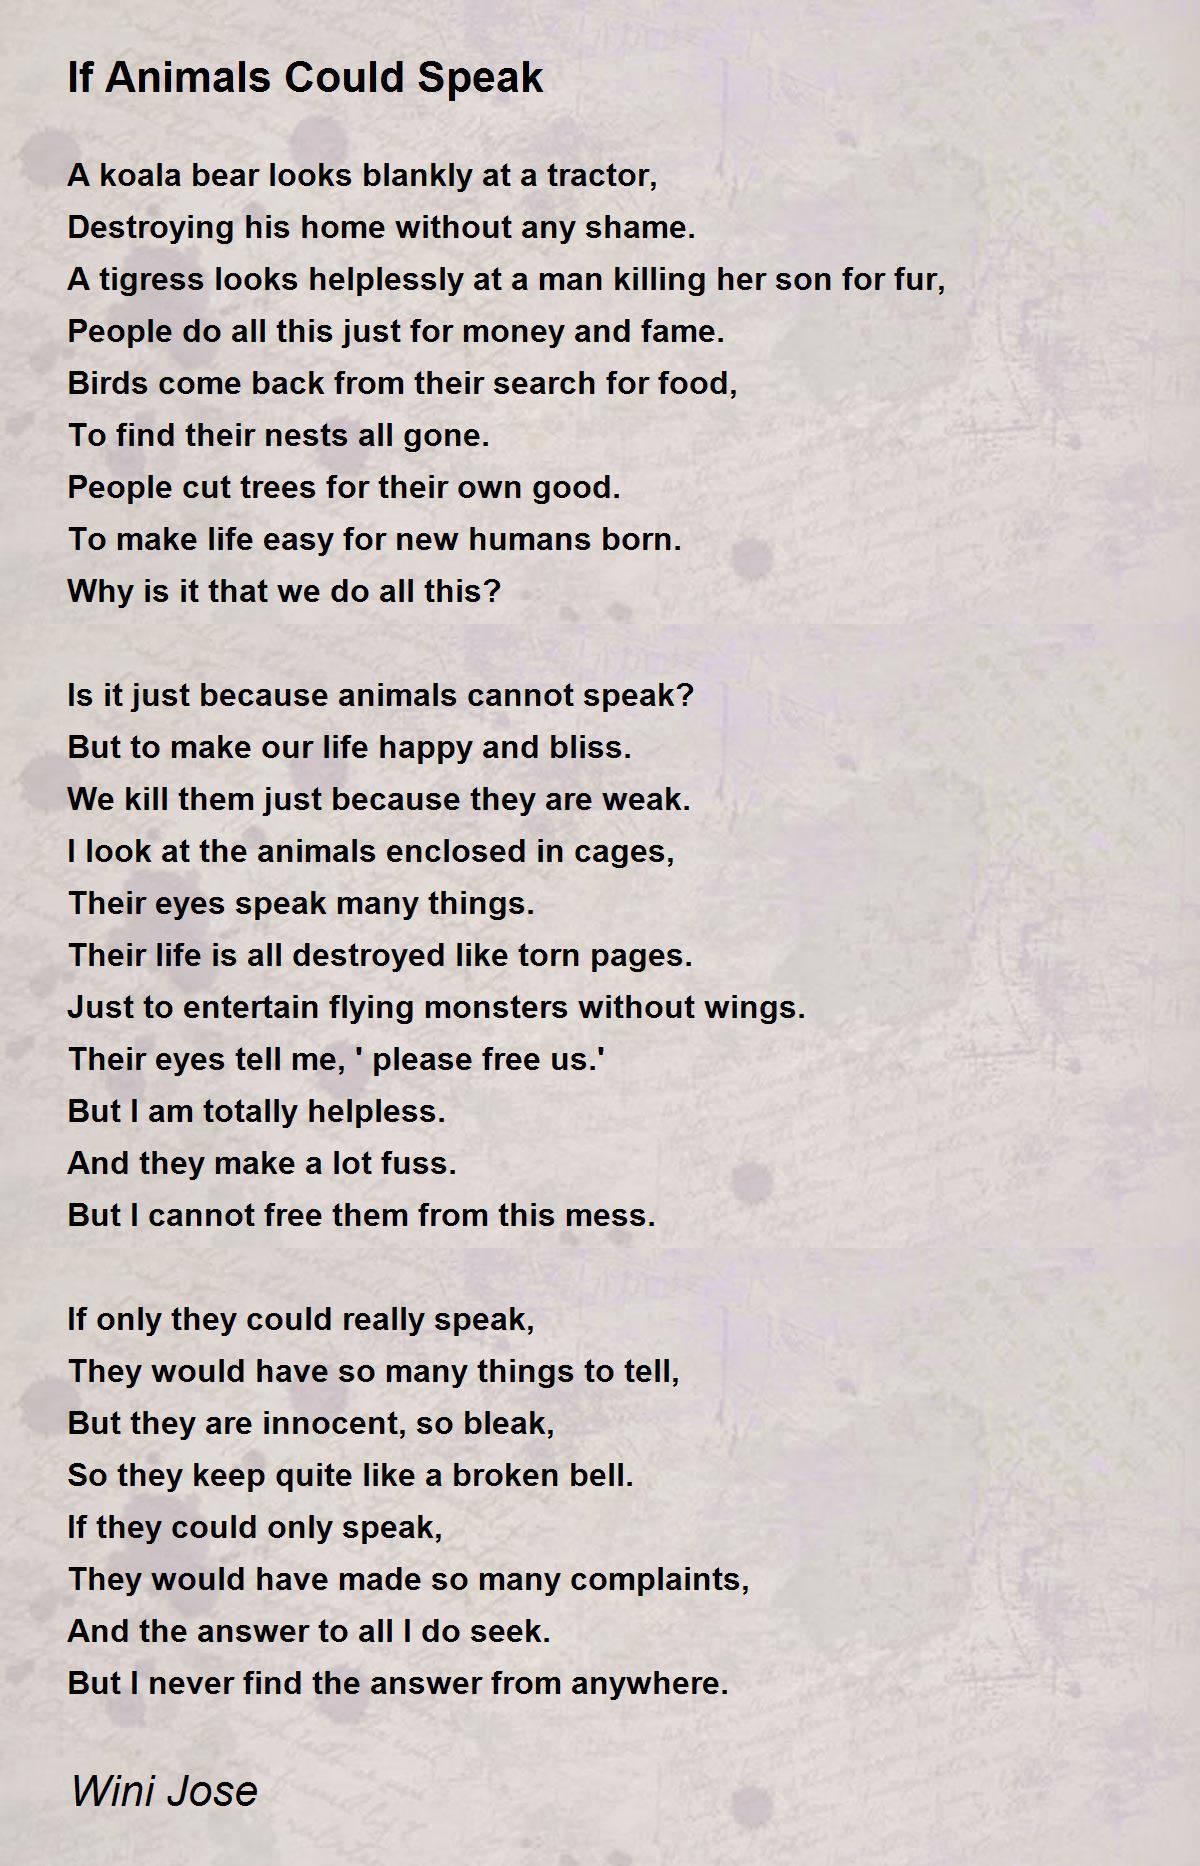 If Animals Could Speak - If Animals Could Speak Poem by Wini Jose